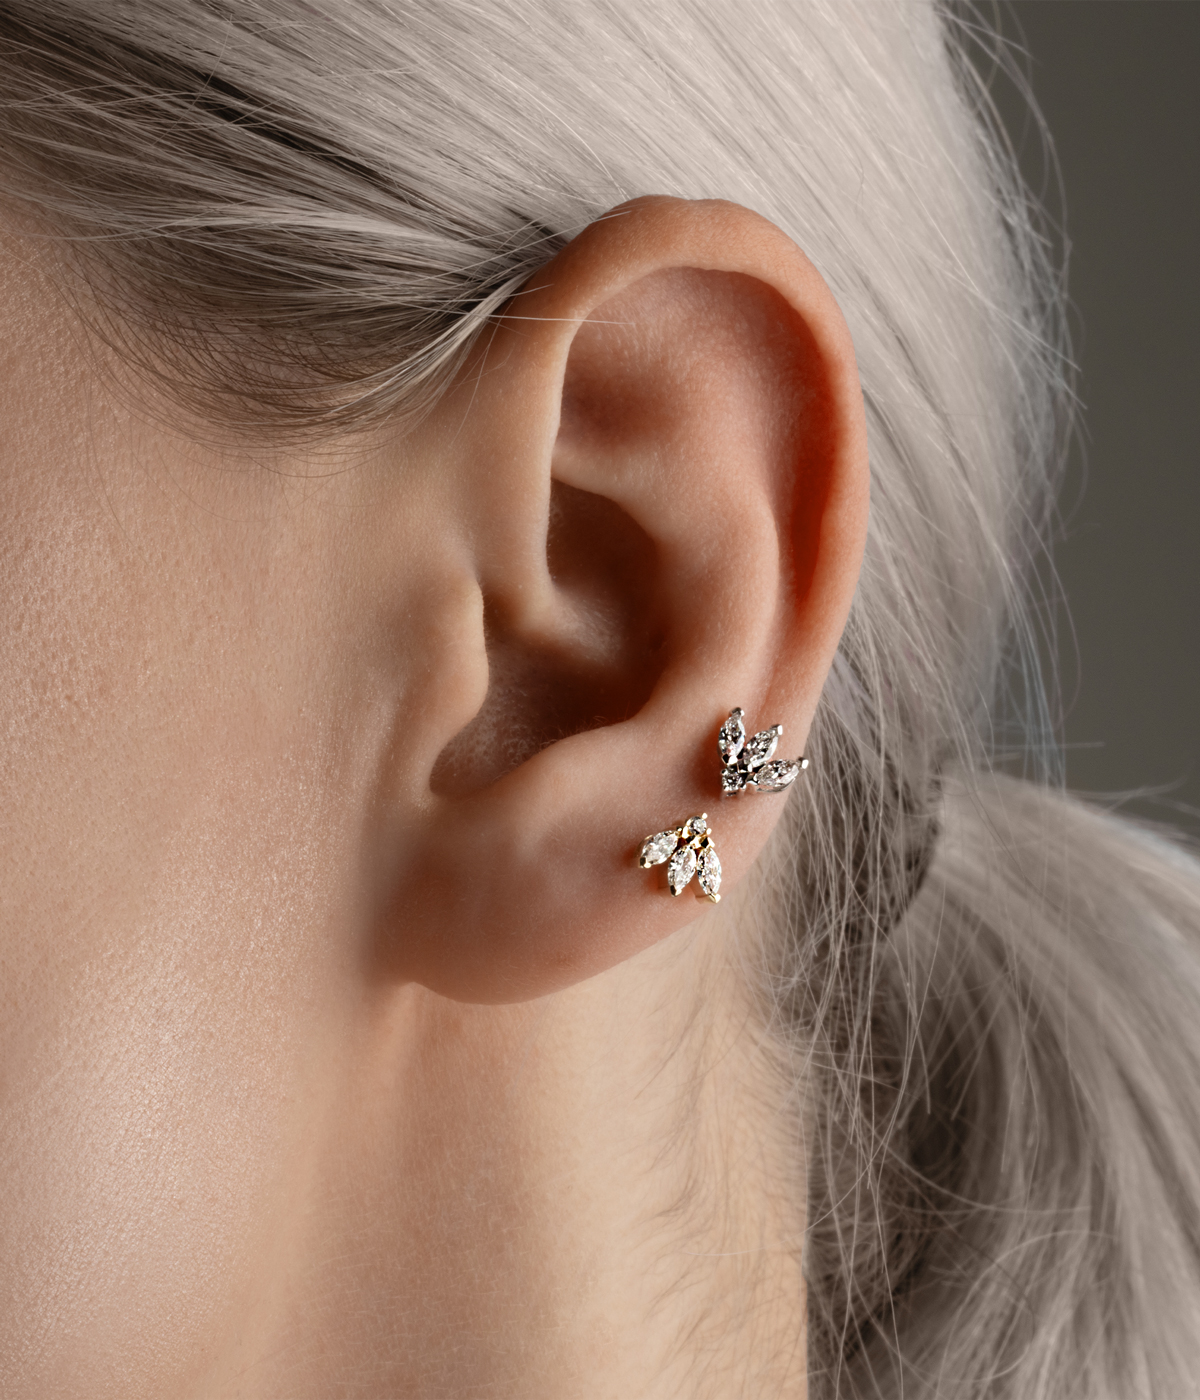 side of woman's face with multiple earrings in ear